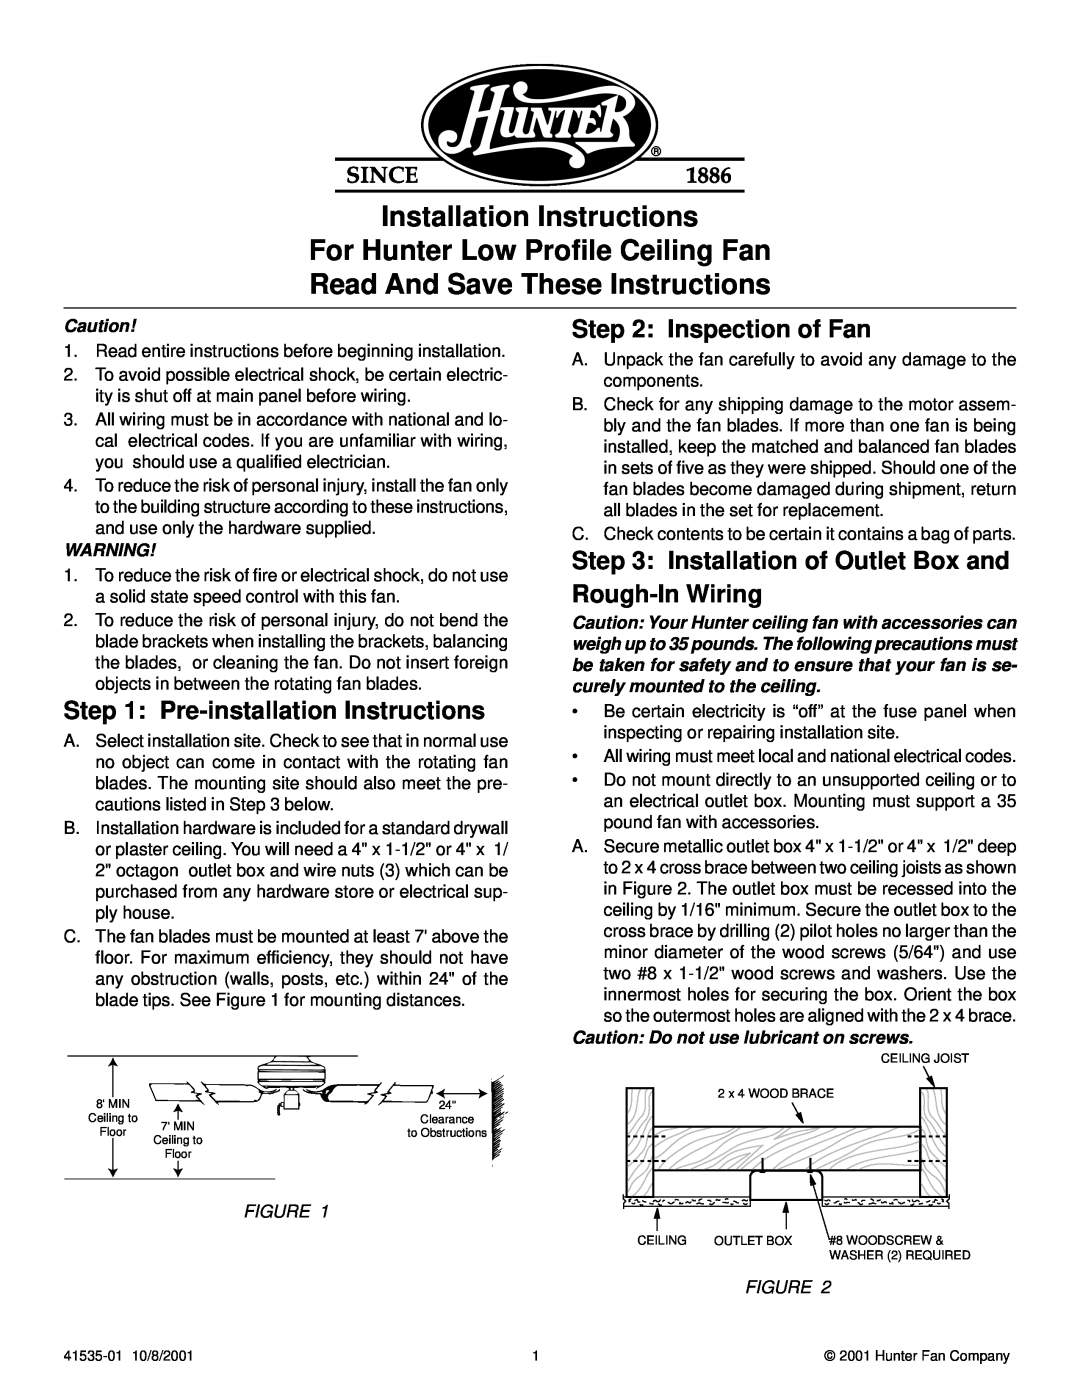 Hunter Fan 41535-01 installation instructions Pre-installation Instructions, Inspection of Fan 